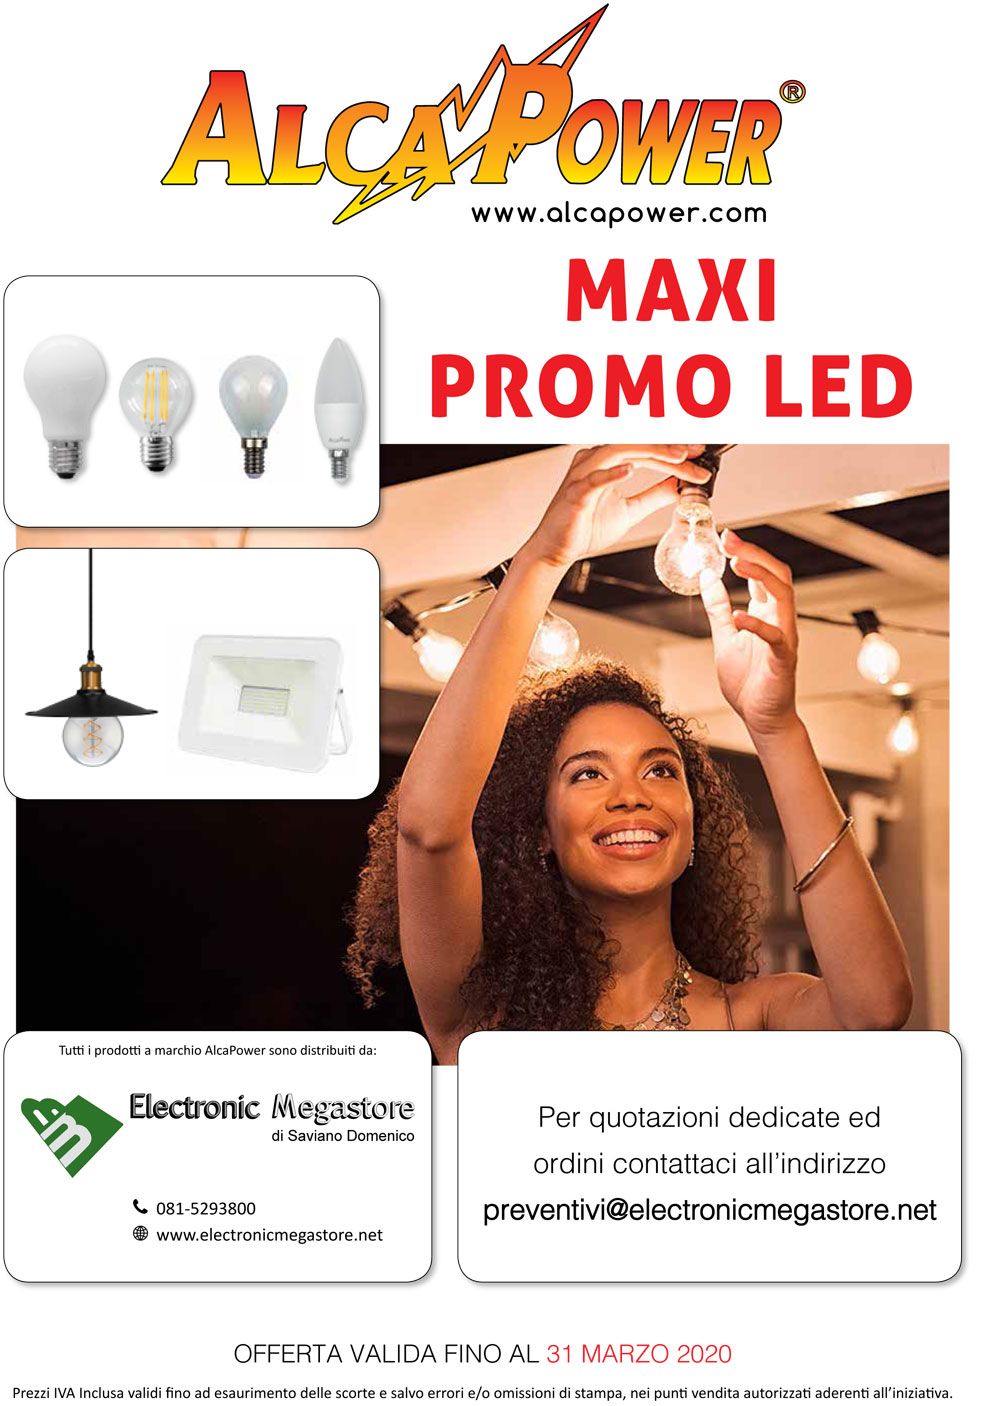 Electronic Megastore | Non perdere l'occasione prodotti LED alta qualità Alcapower garanzia italiana Contattati per qualsiasi info promo LED